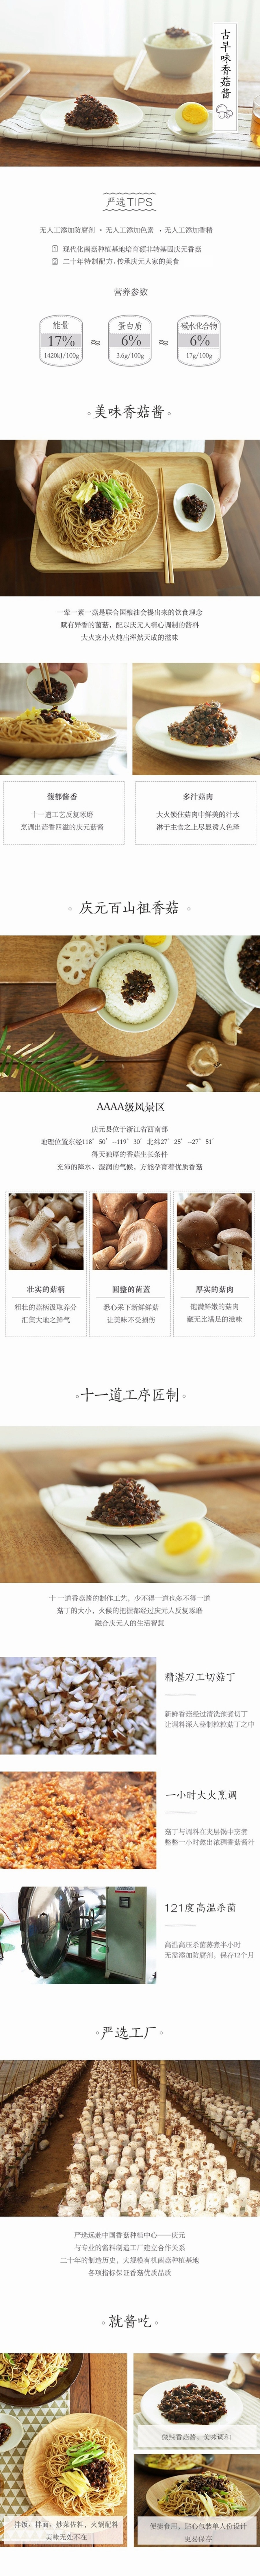 【中国直邮】网易严选 香菇酱 75克*5袋 (微辣) 下饭菜调味火锅拌面台式好味道